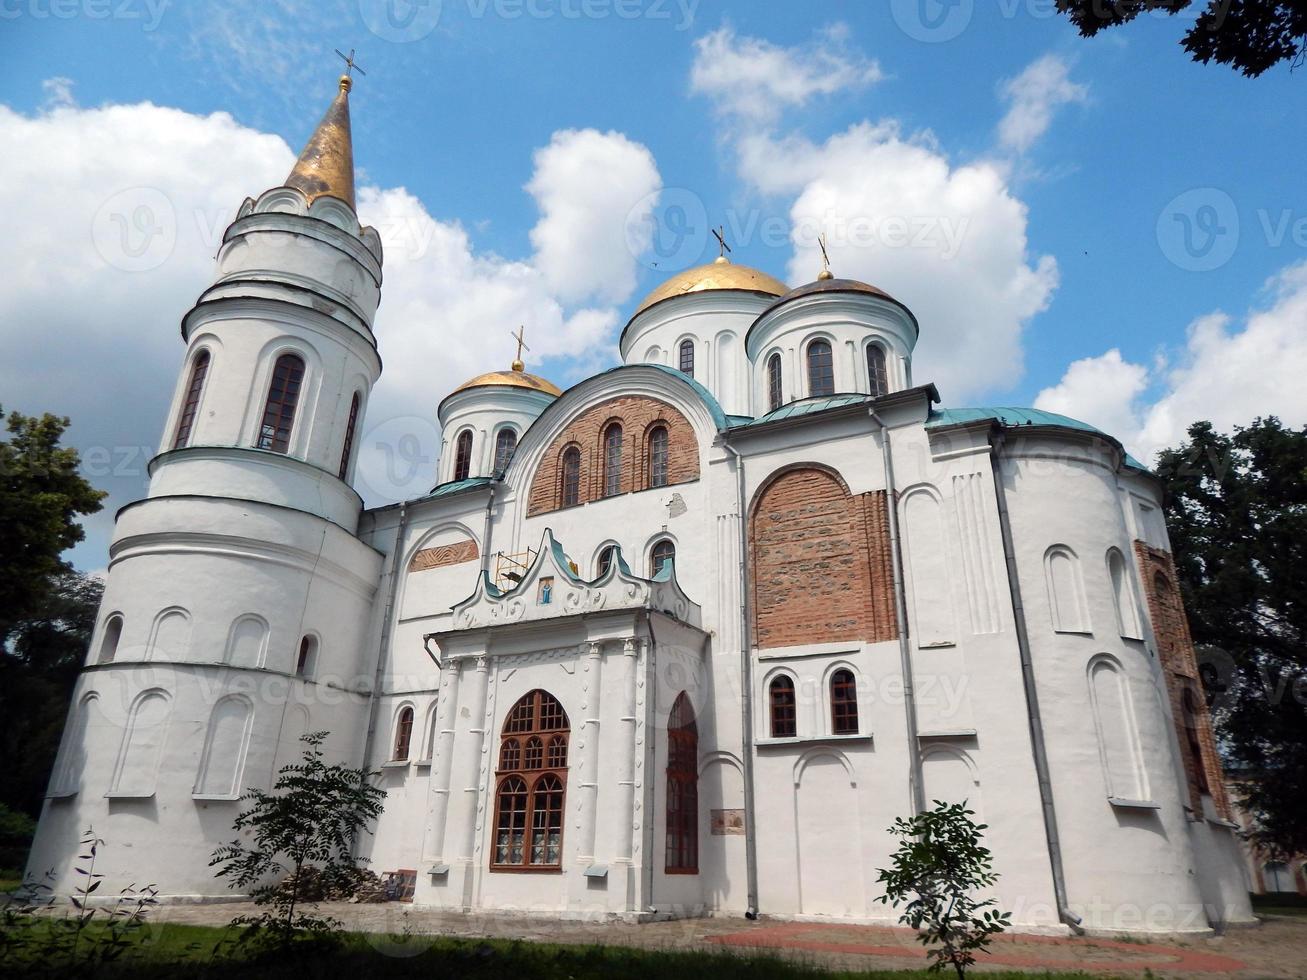 architettura medievale del barocco ucraino a chernigov foto